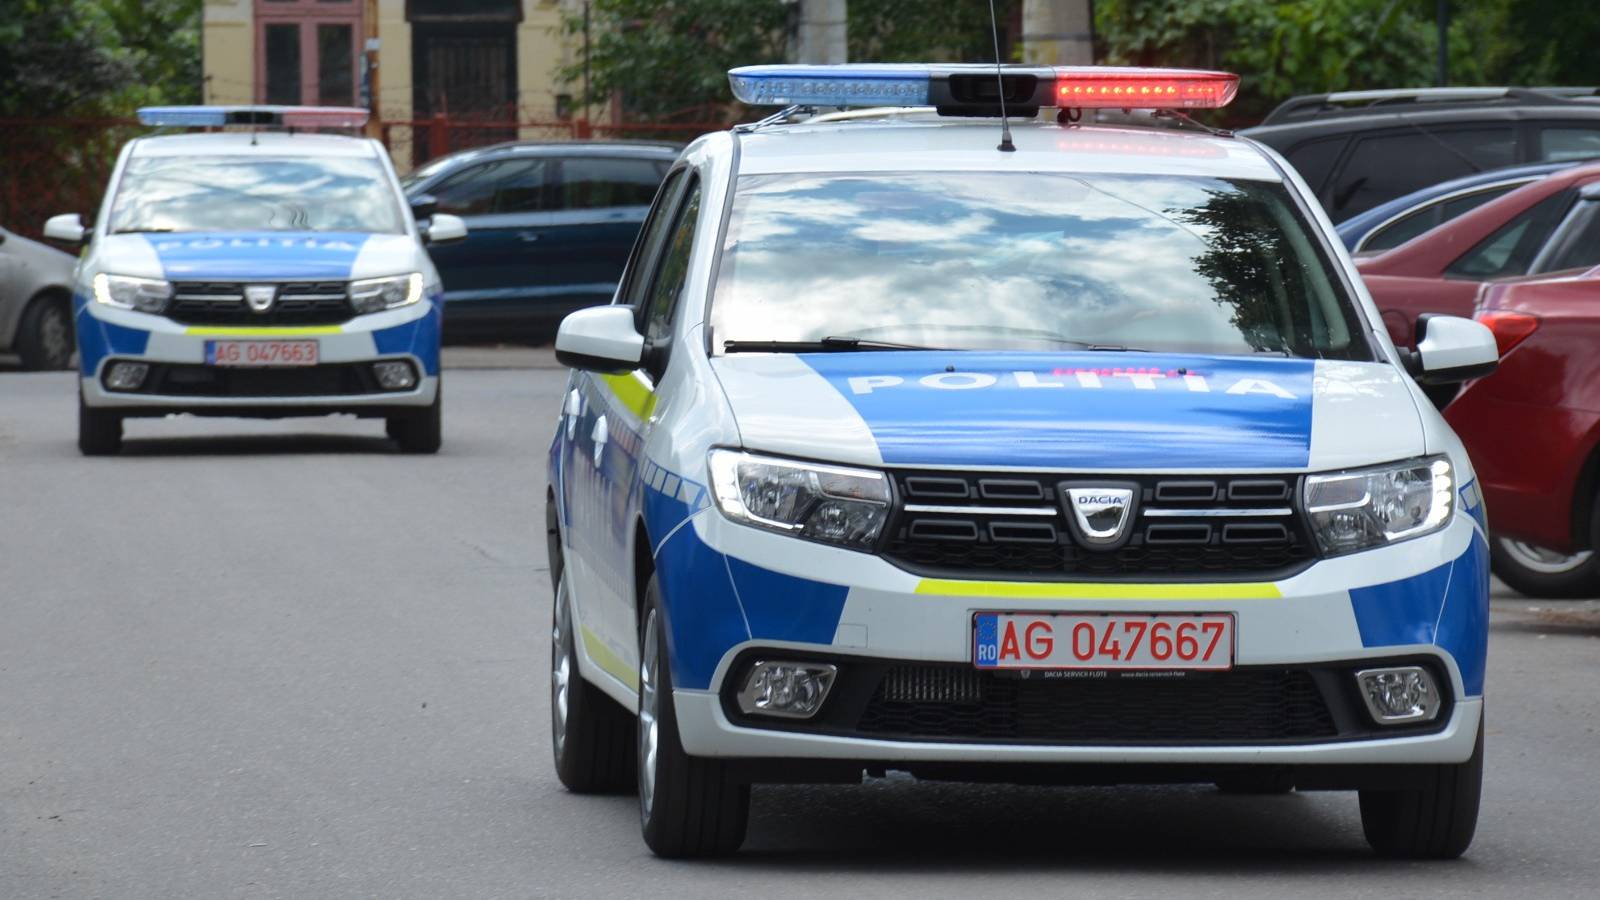 Roemeense politie waarschuwt voor tractoren op de openbare weg